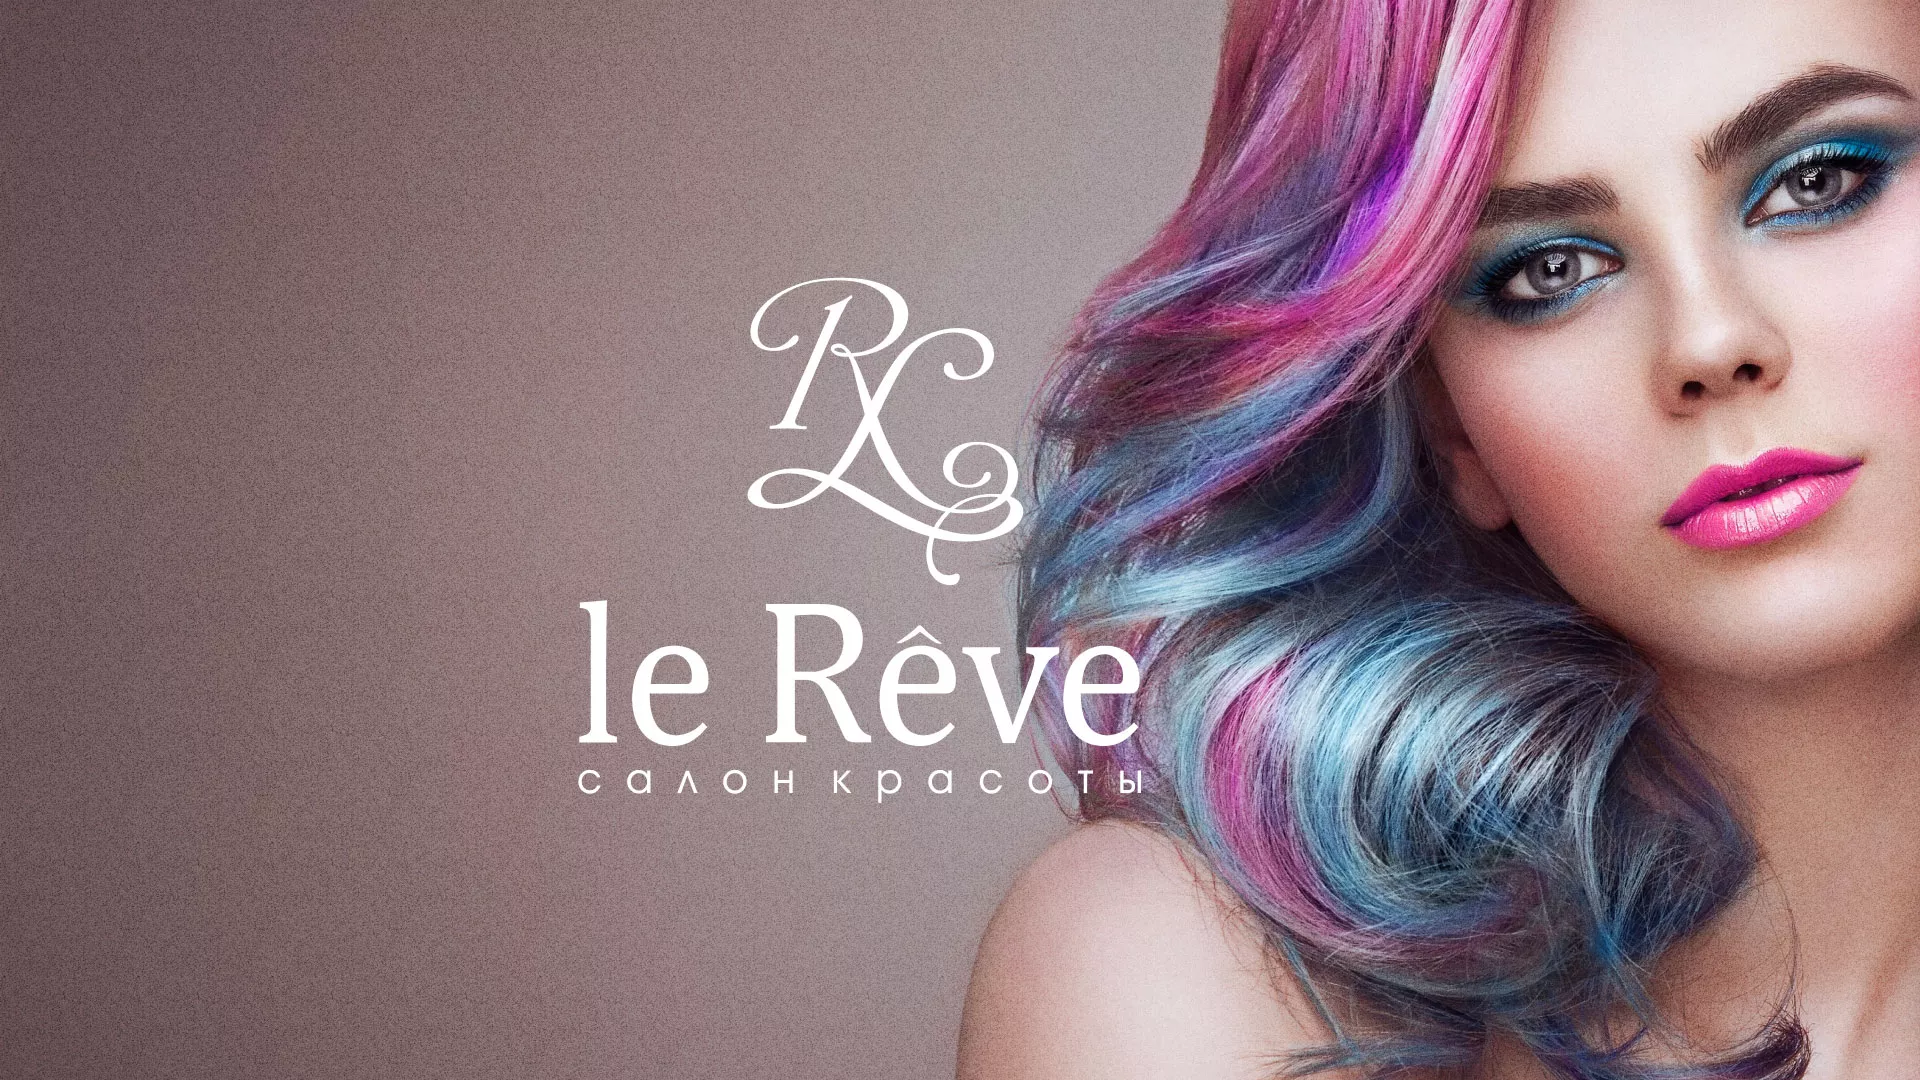 Создание сайта для салона красоты «Le Reve» в Обнинске